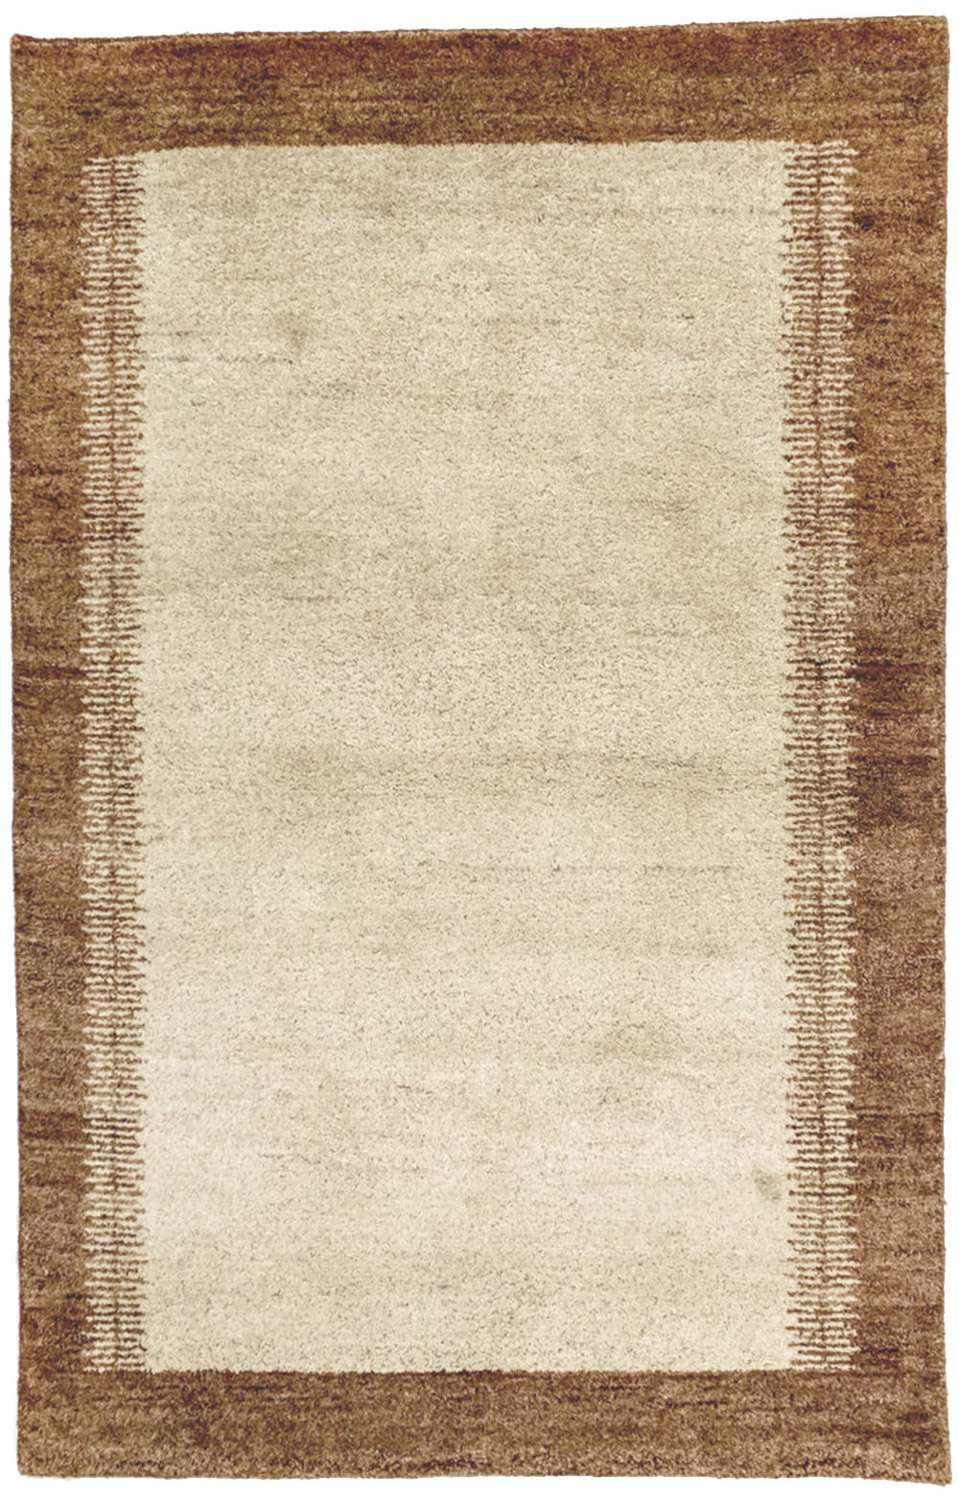 Gabbeh Rug - Indus - 165 x 110 cm - beige